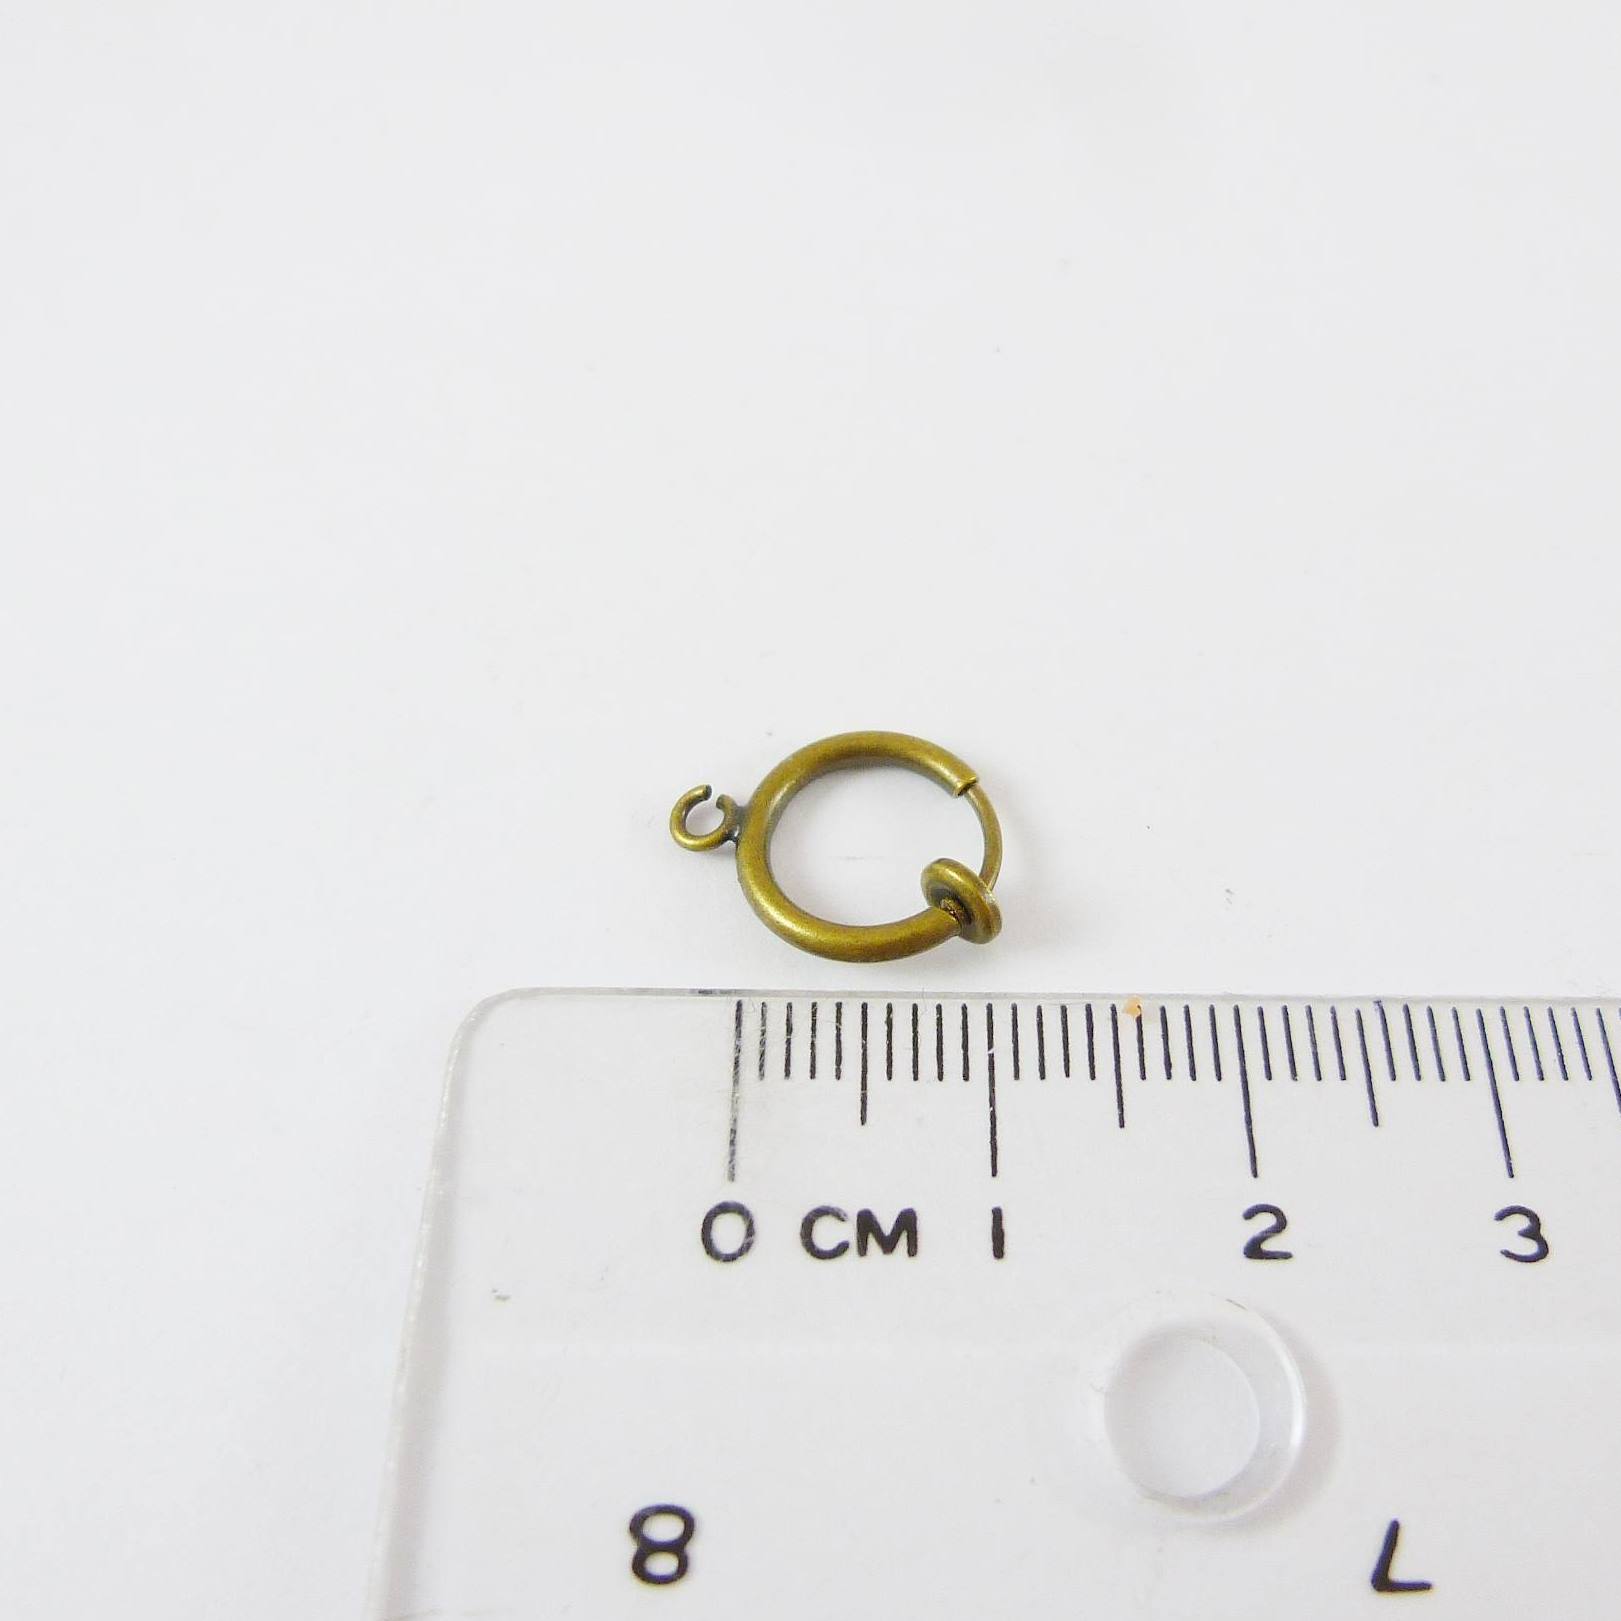 銅鍍青古銅色圓形彈簧耳夾圈-10mm